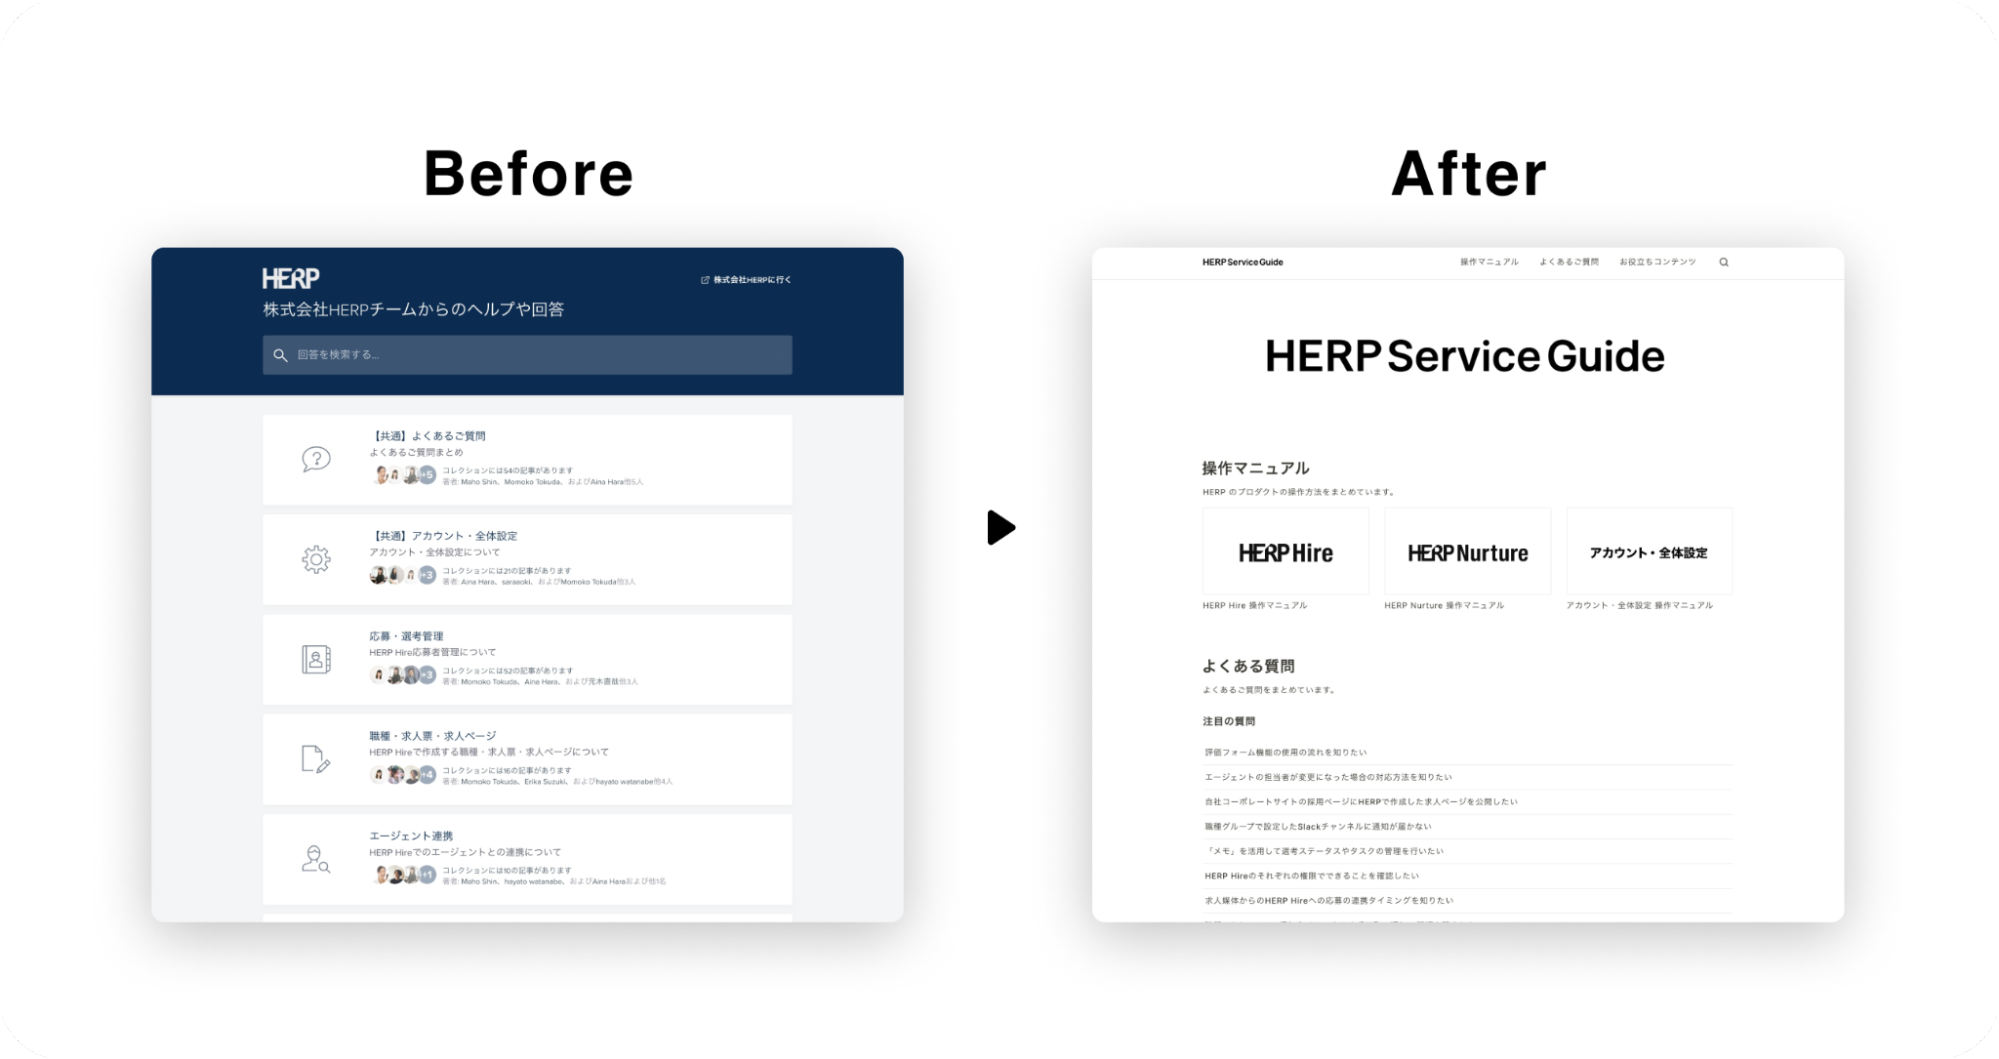 複雑な情報が散らばっていた過去のヘルプサイトと、ユーザーが認識しやすい情報設計に編集されたリニューアル後のヘルプサイトの比較。BeforeとAfterで左右に2枚画像が並んでいる。